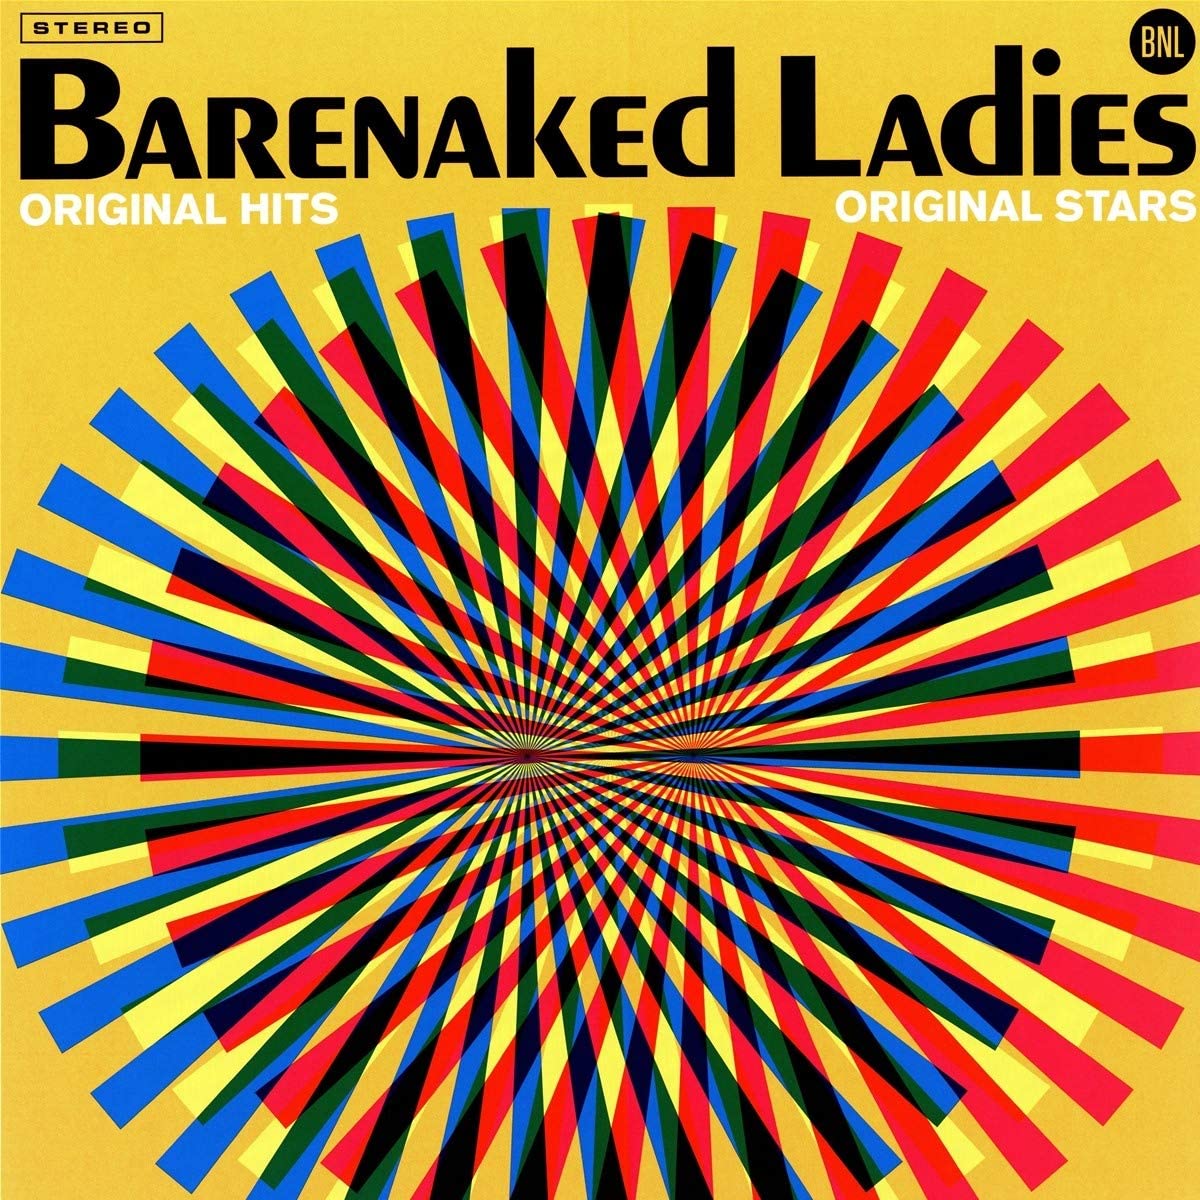 Barenaked Ladies - Original Hits, Original Stars (Vinyl LP)